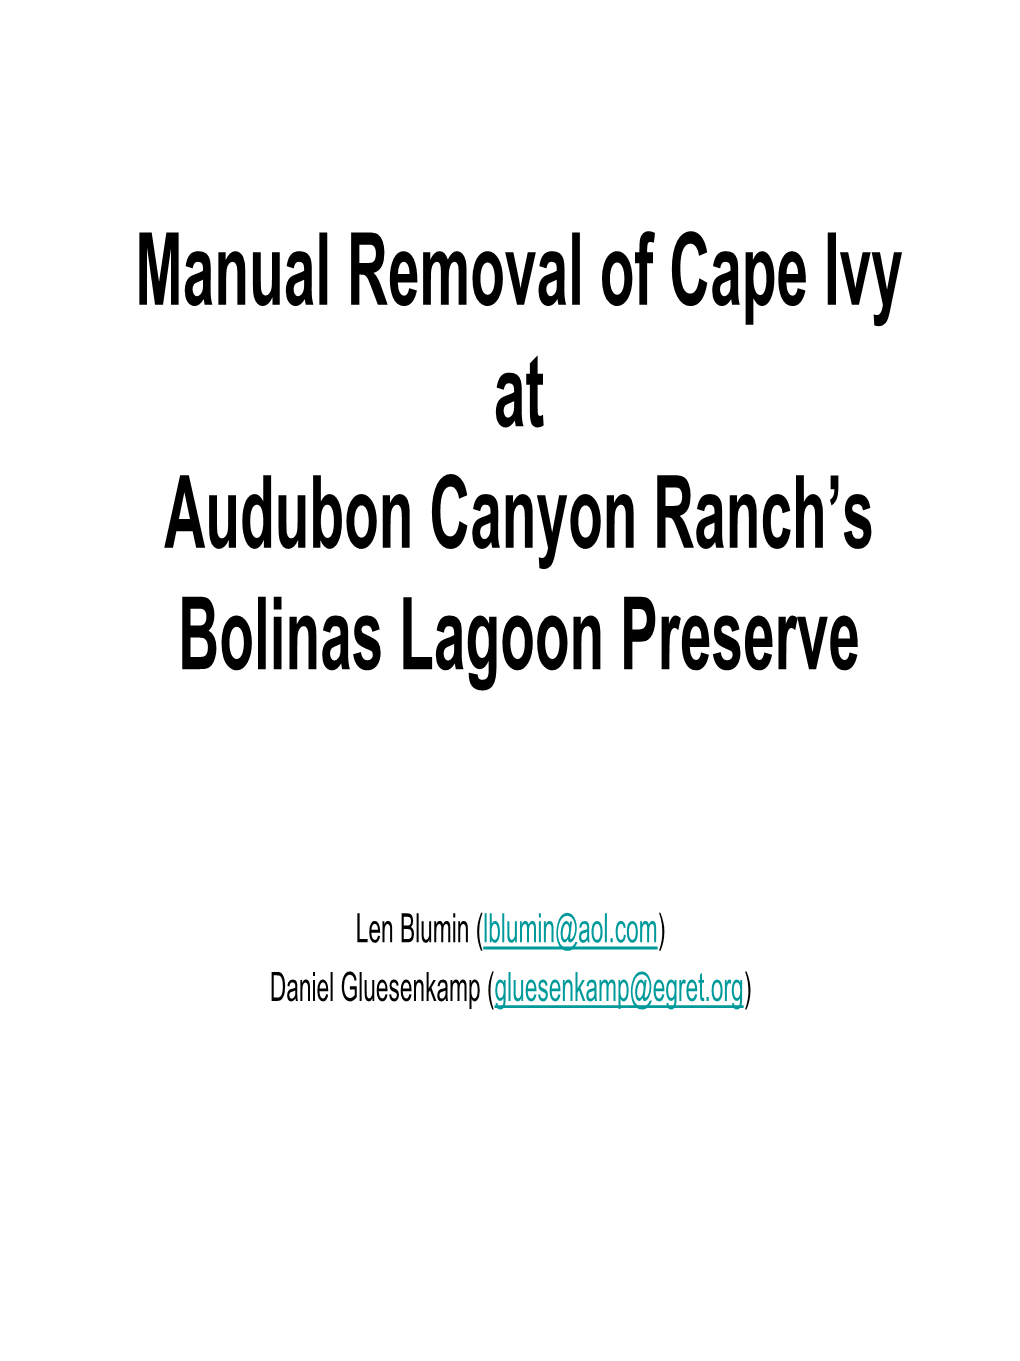 Manual Removal of Cape Ivy at Audubon Canyon Ranch's Bolinas